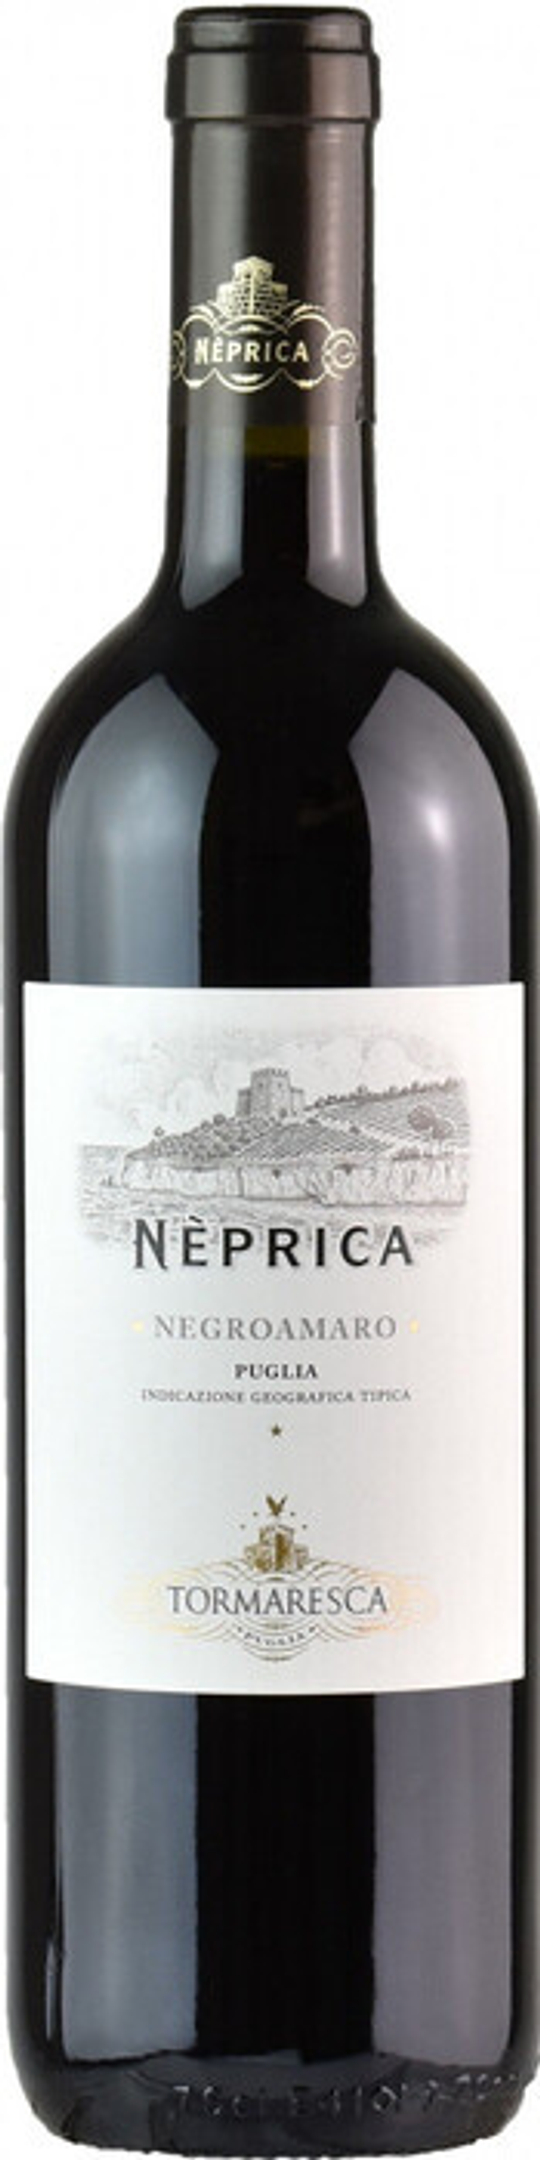 Вино Tormaresca Neprica Negroamaro Puglia IGT, 0,75 л.